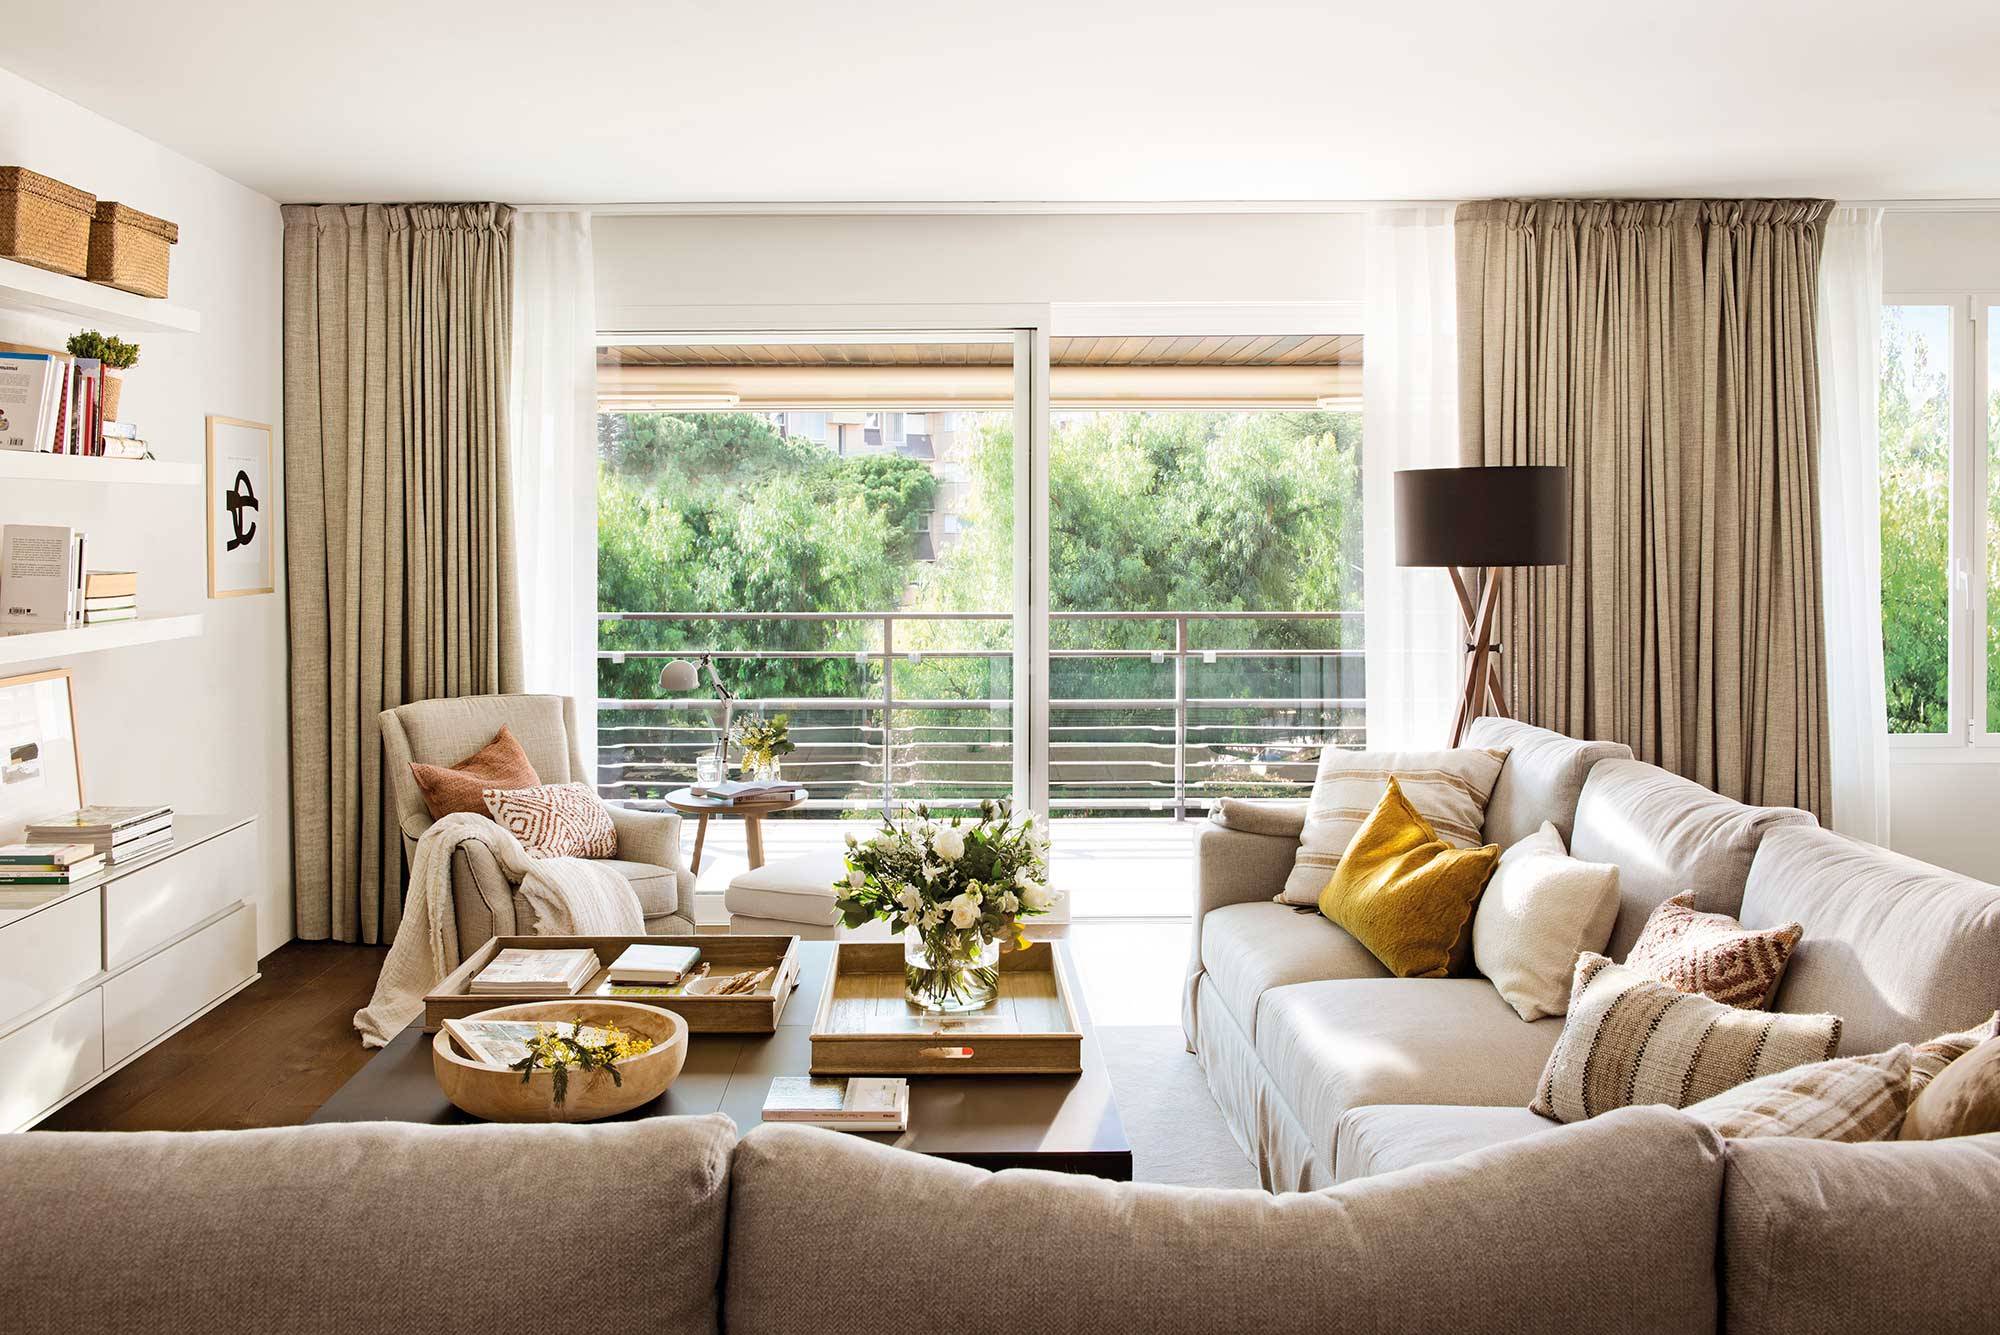 Salón moderno con ventanal a la terraza, sofás beige y cortinas dobles.  